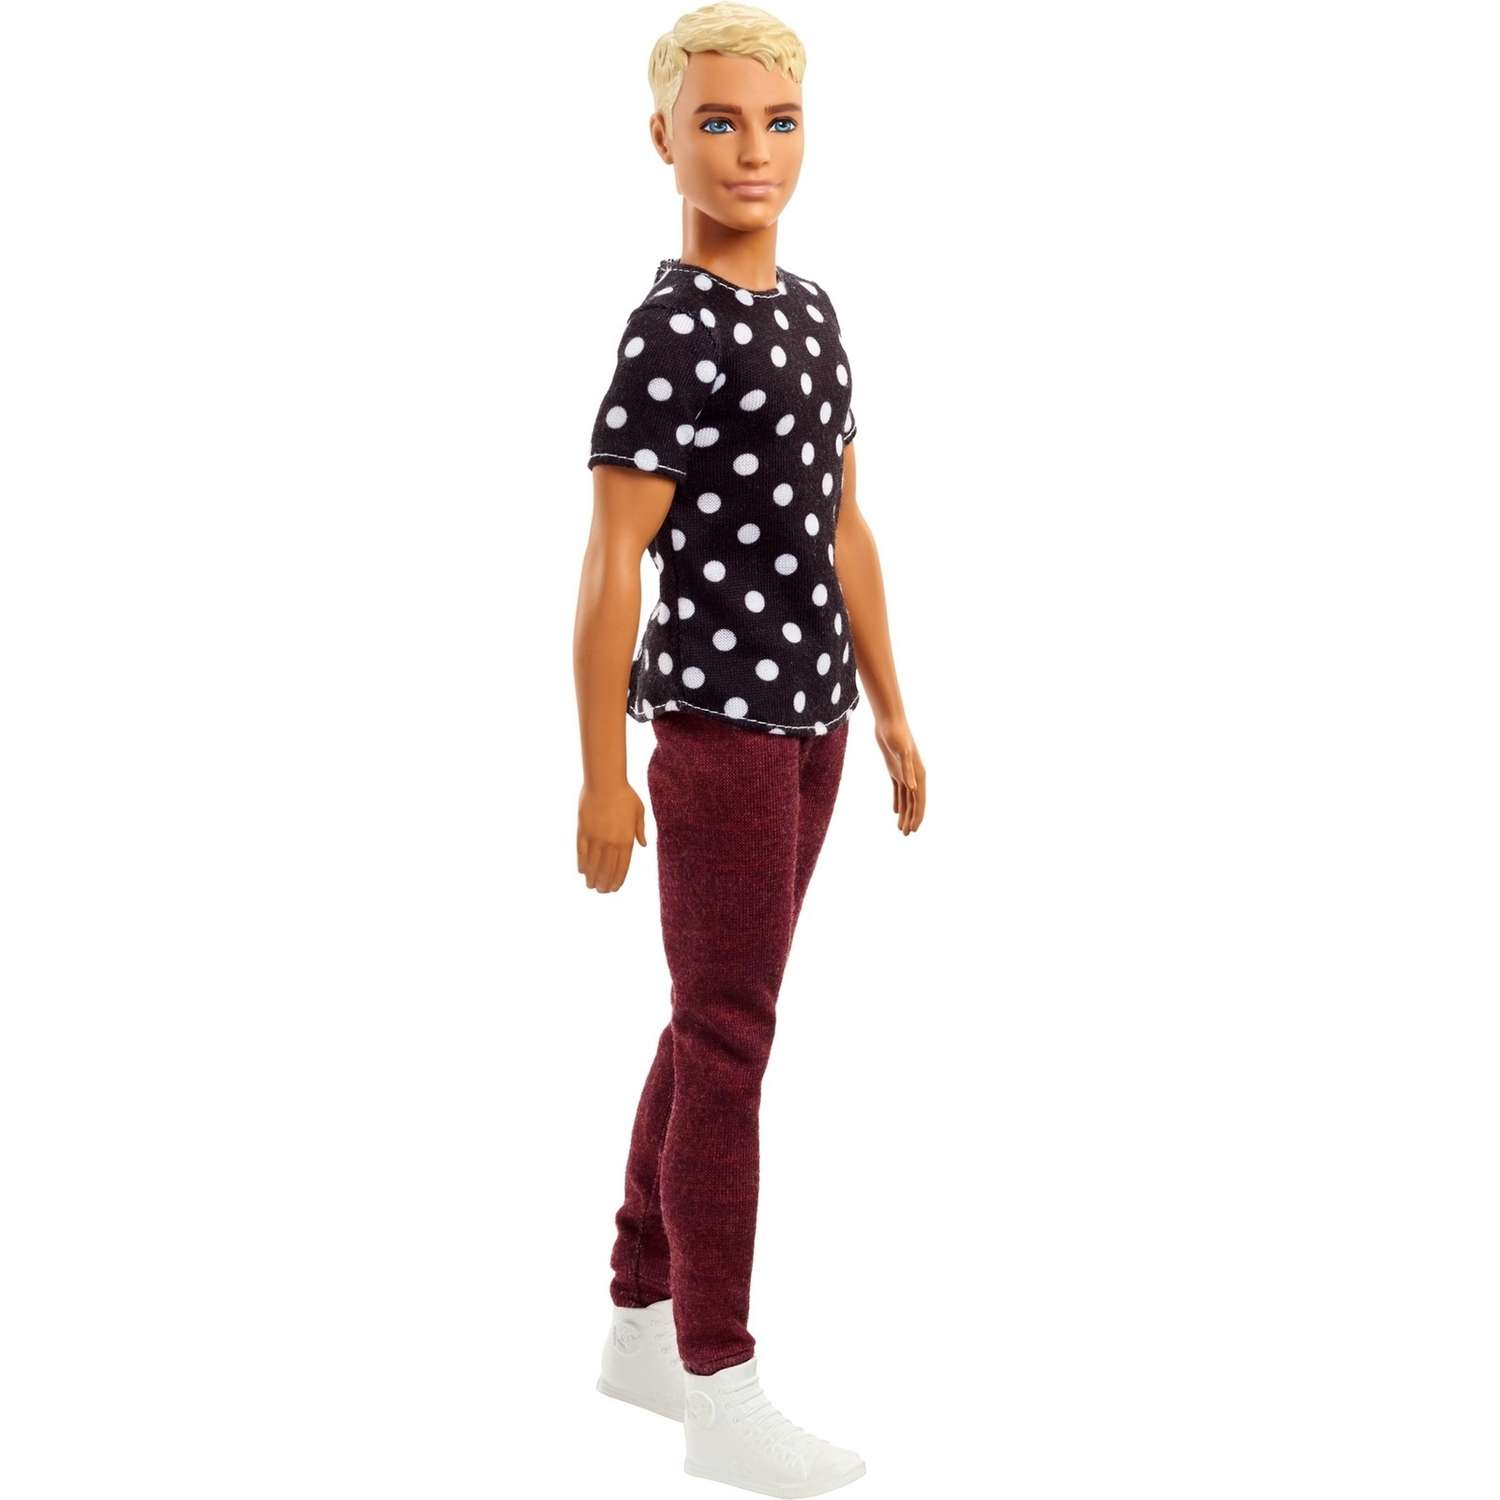 Кукла Barbie Кен В Черном и Белом FJF72 DWK44 - фото 3